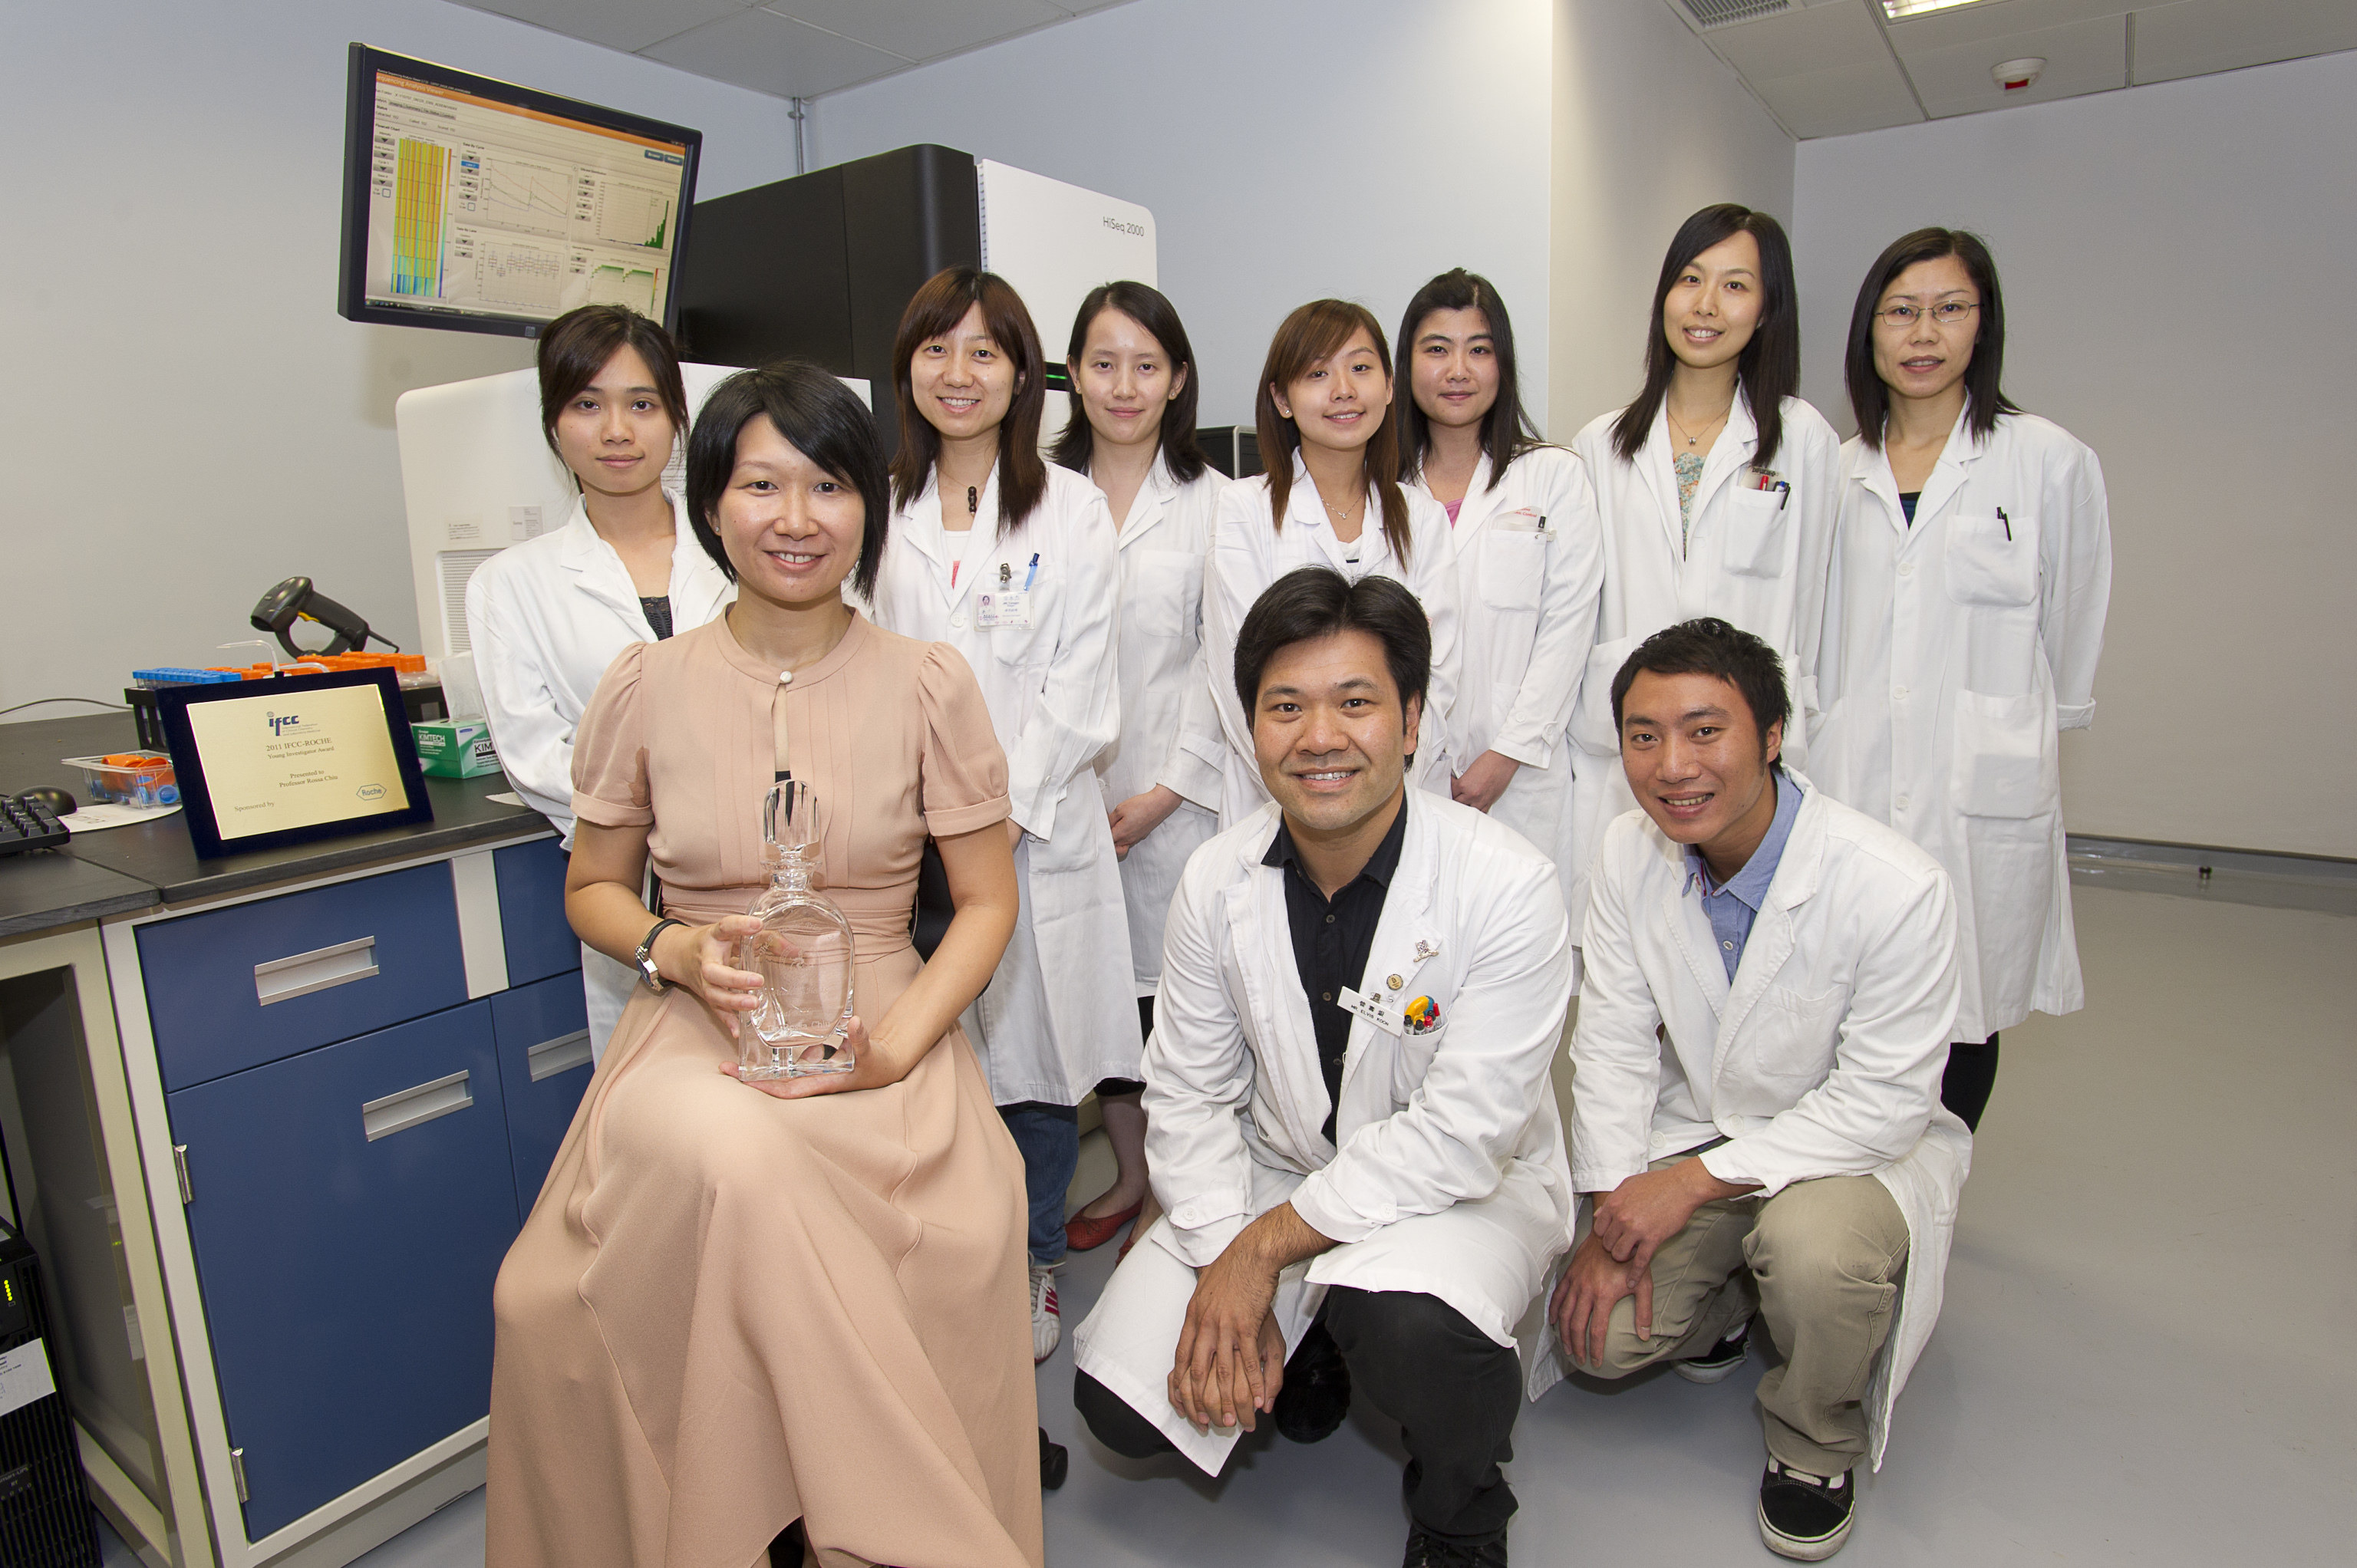 赵慧君教授 (前排左一)与研究团队合照。